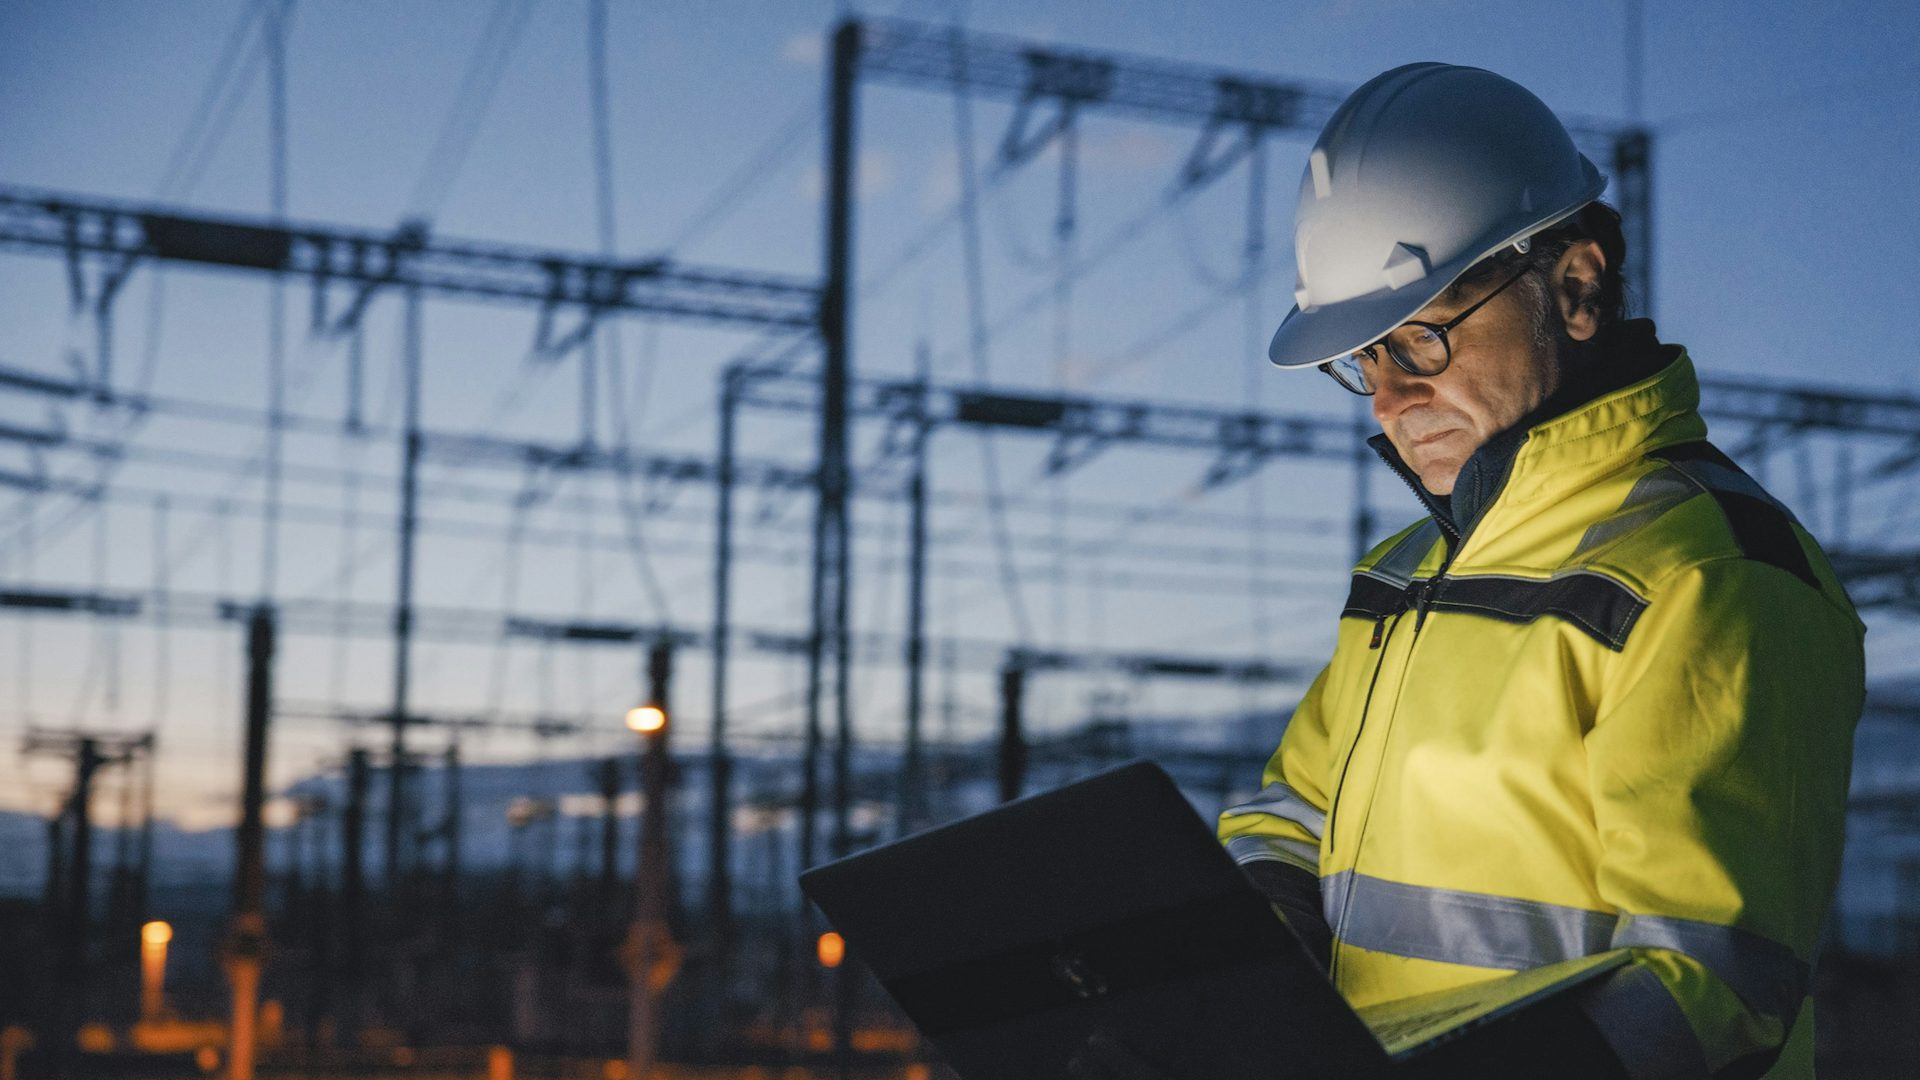 Un travailleur en tenue de sécurité se tient devant une centrale électrique, portant un casque de sécurité et un gilet de sécurité